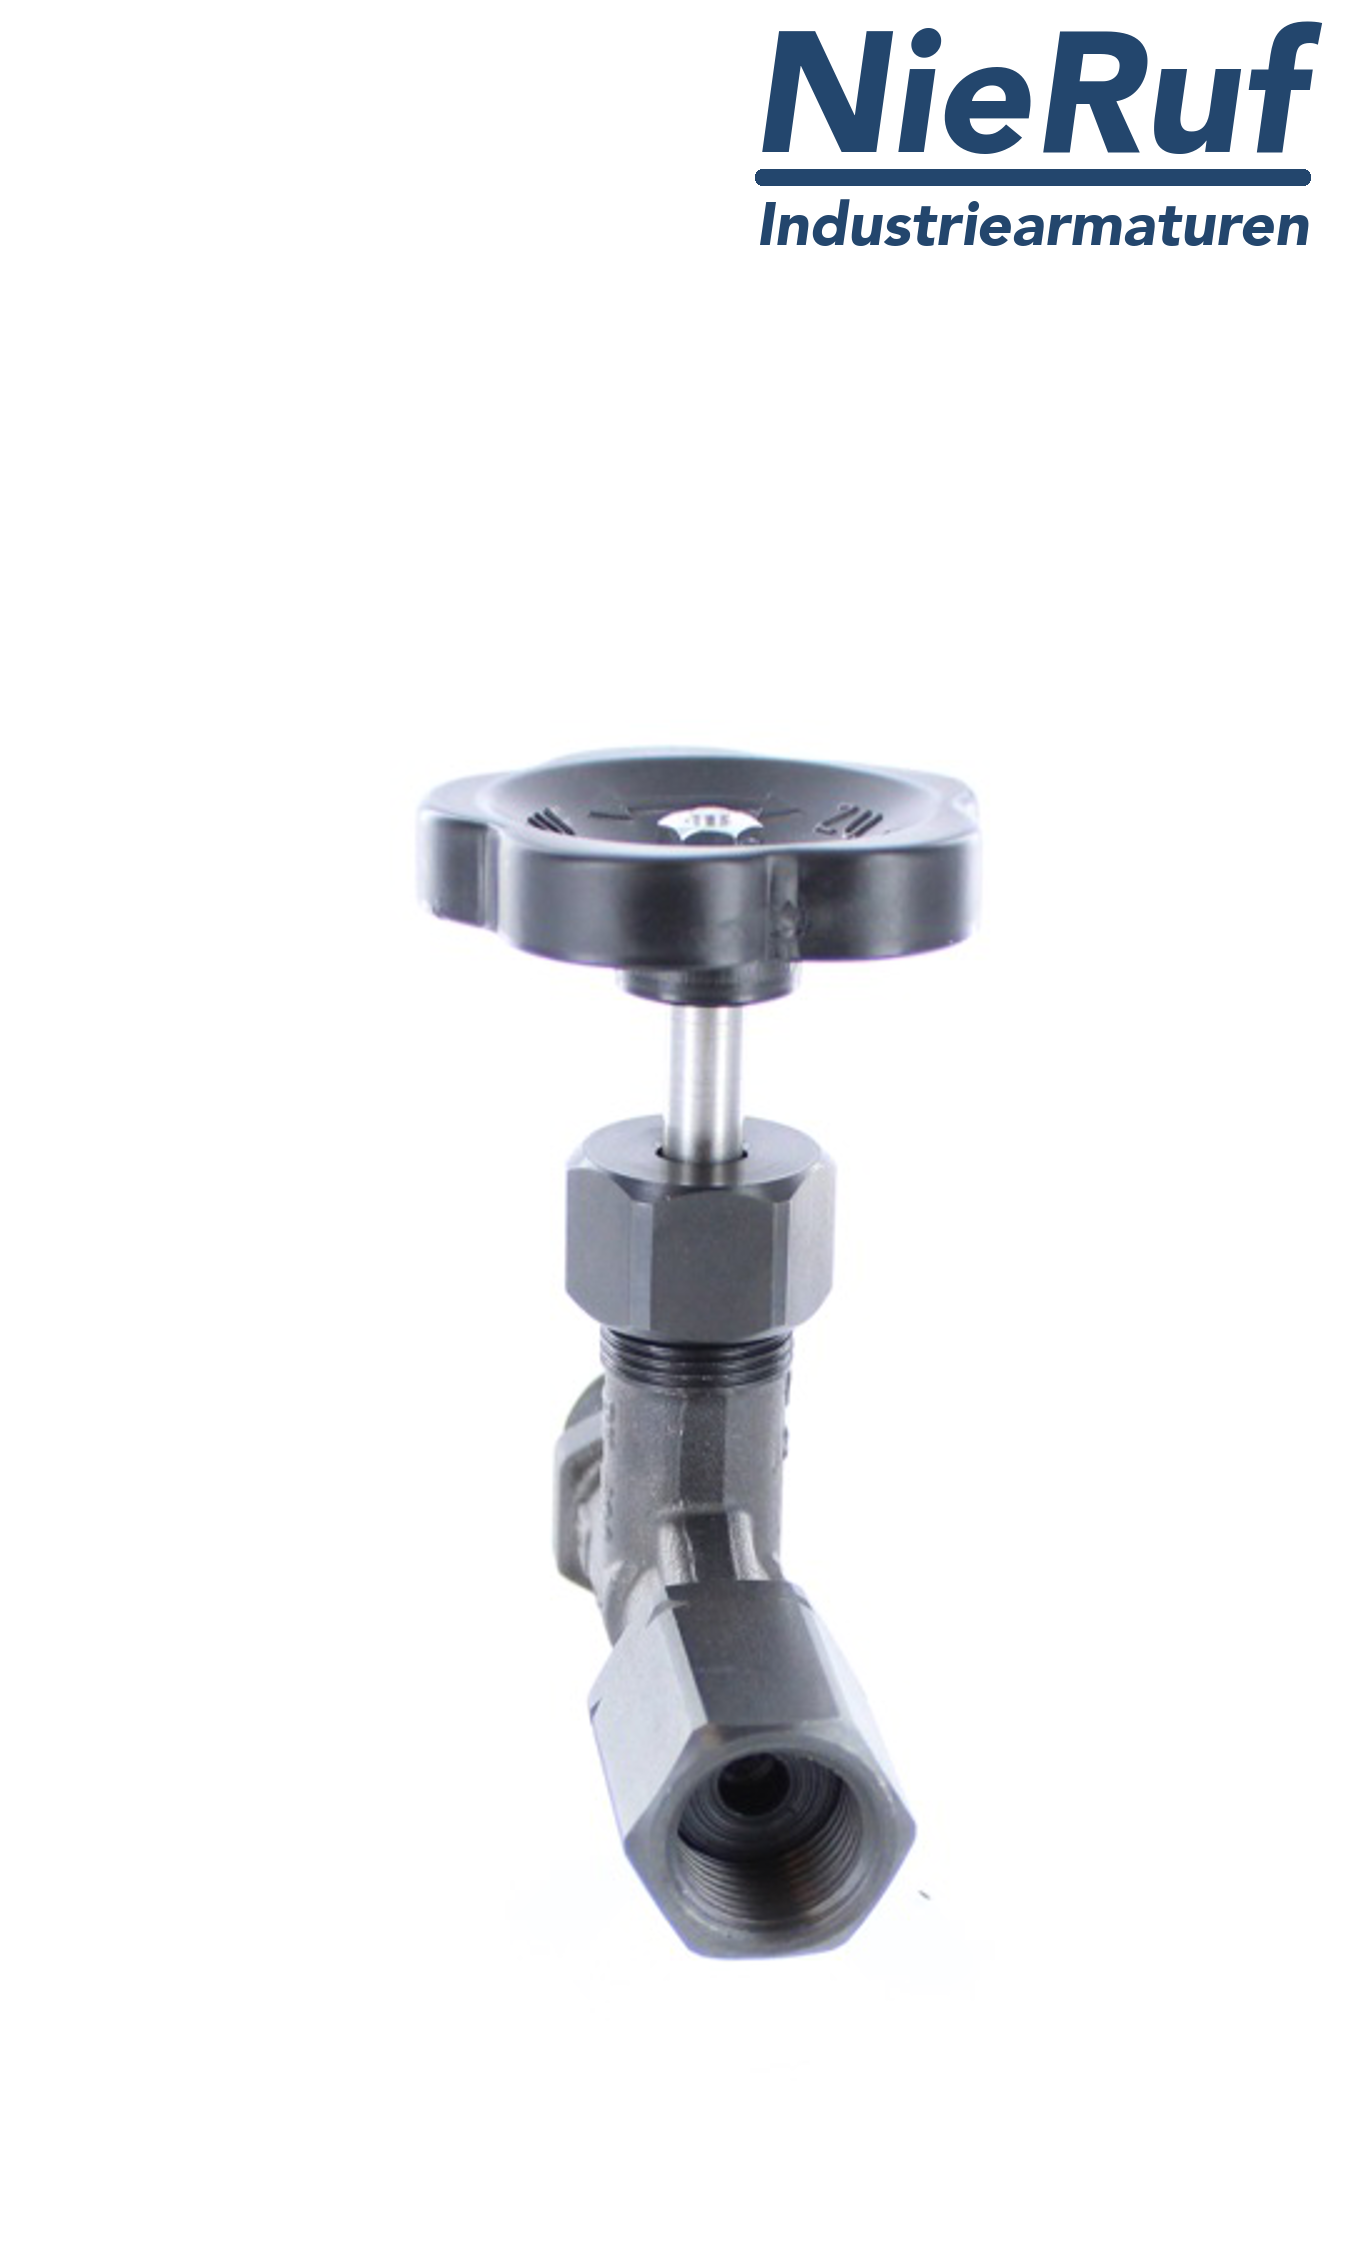 manometer gauge valves male thread x adapter for instrument holder with nut adjustable DIN 16270 steel 1.0460 400 bar